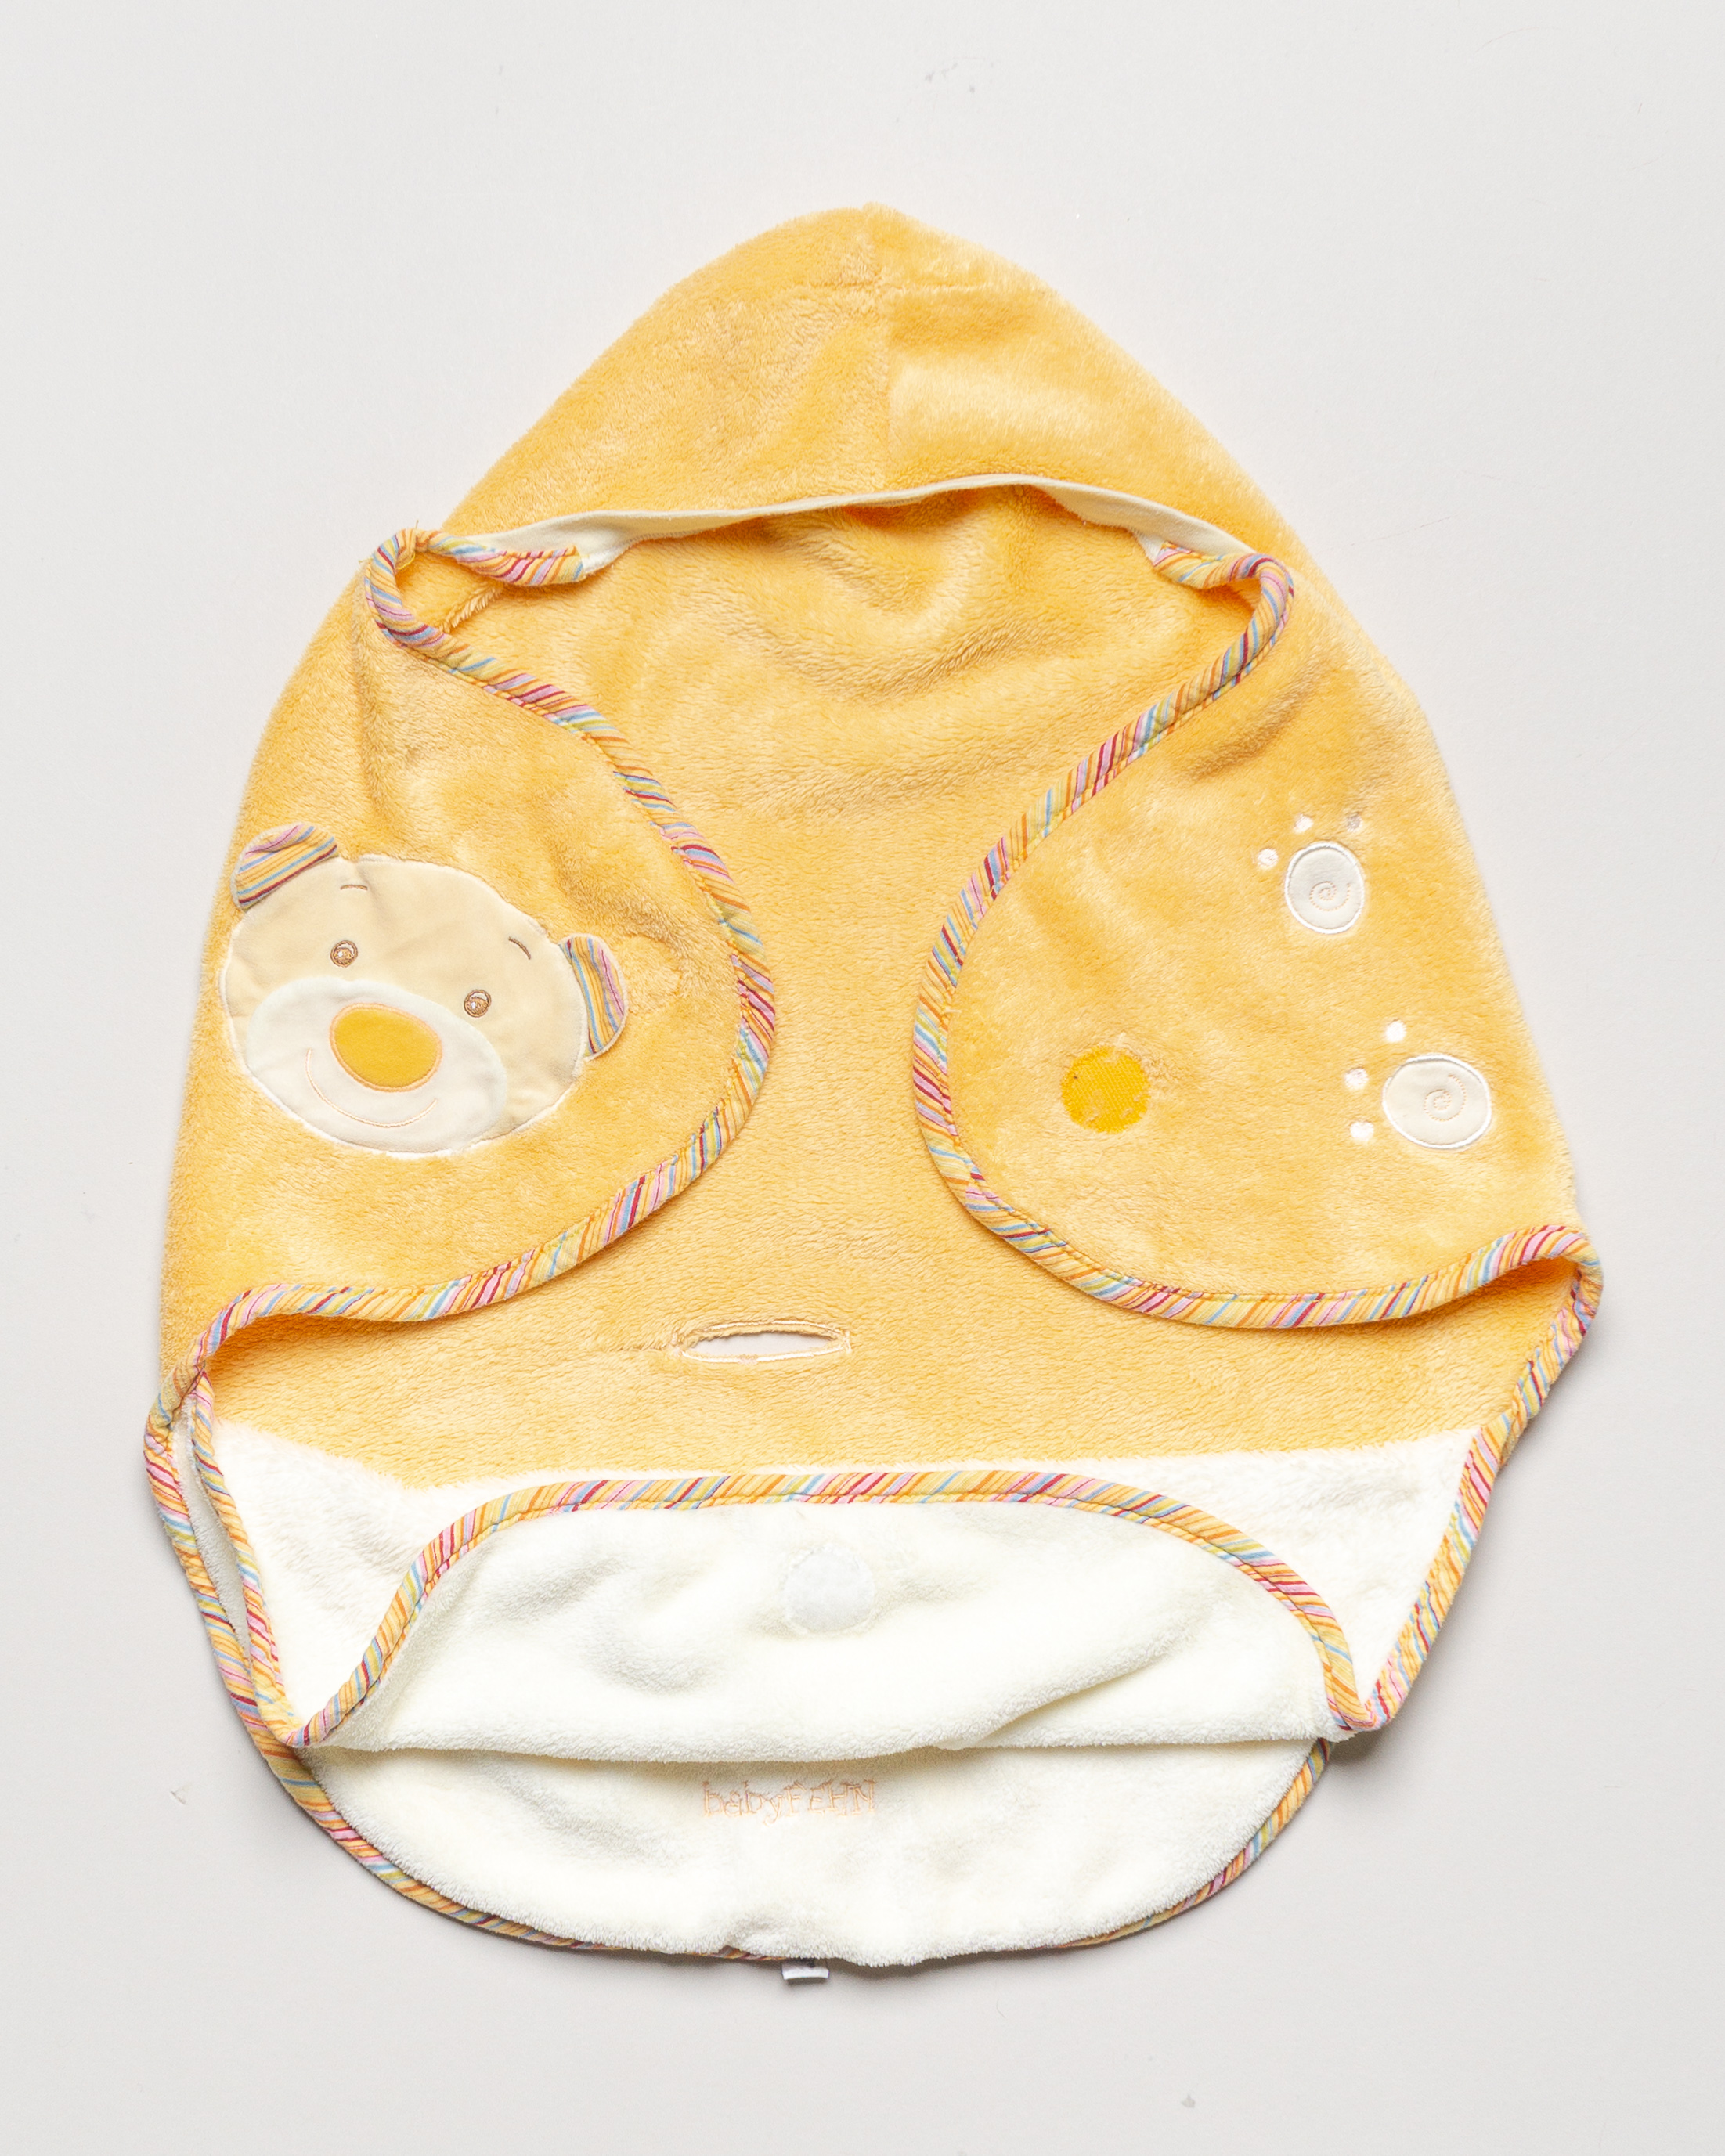 Schlafsack Gr. 62 – Pucksack Einschlagdecke Maxi Cosi Babyschale Gelb Teddy Bär